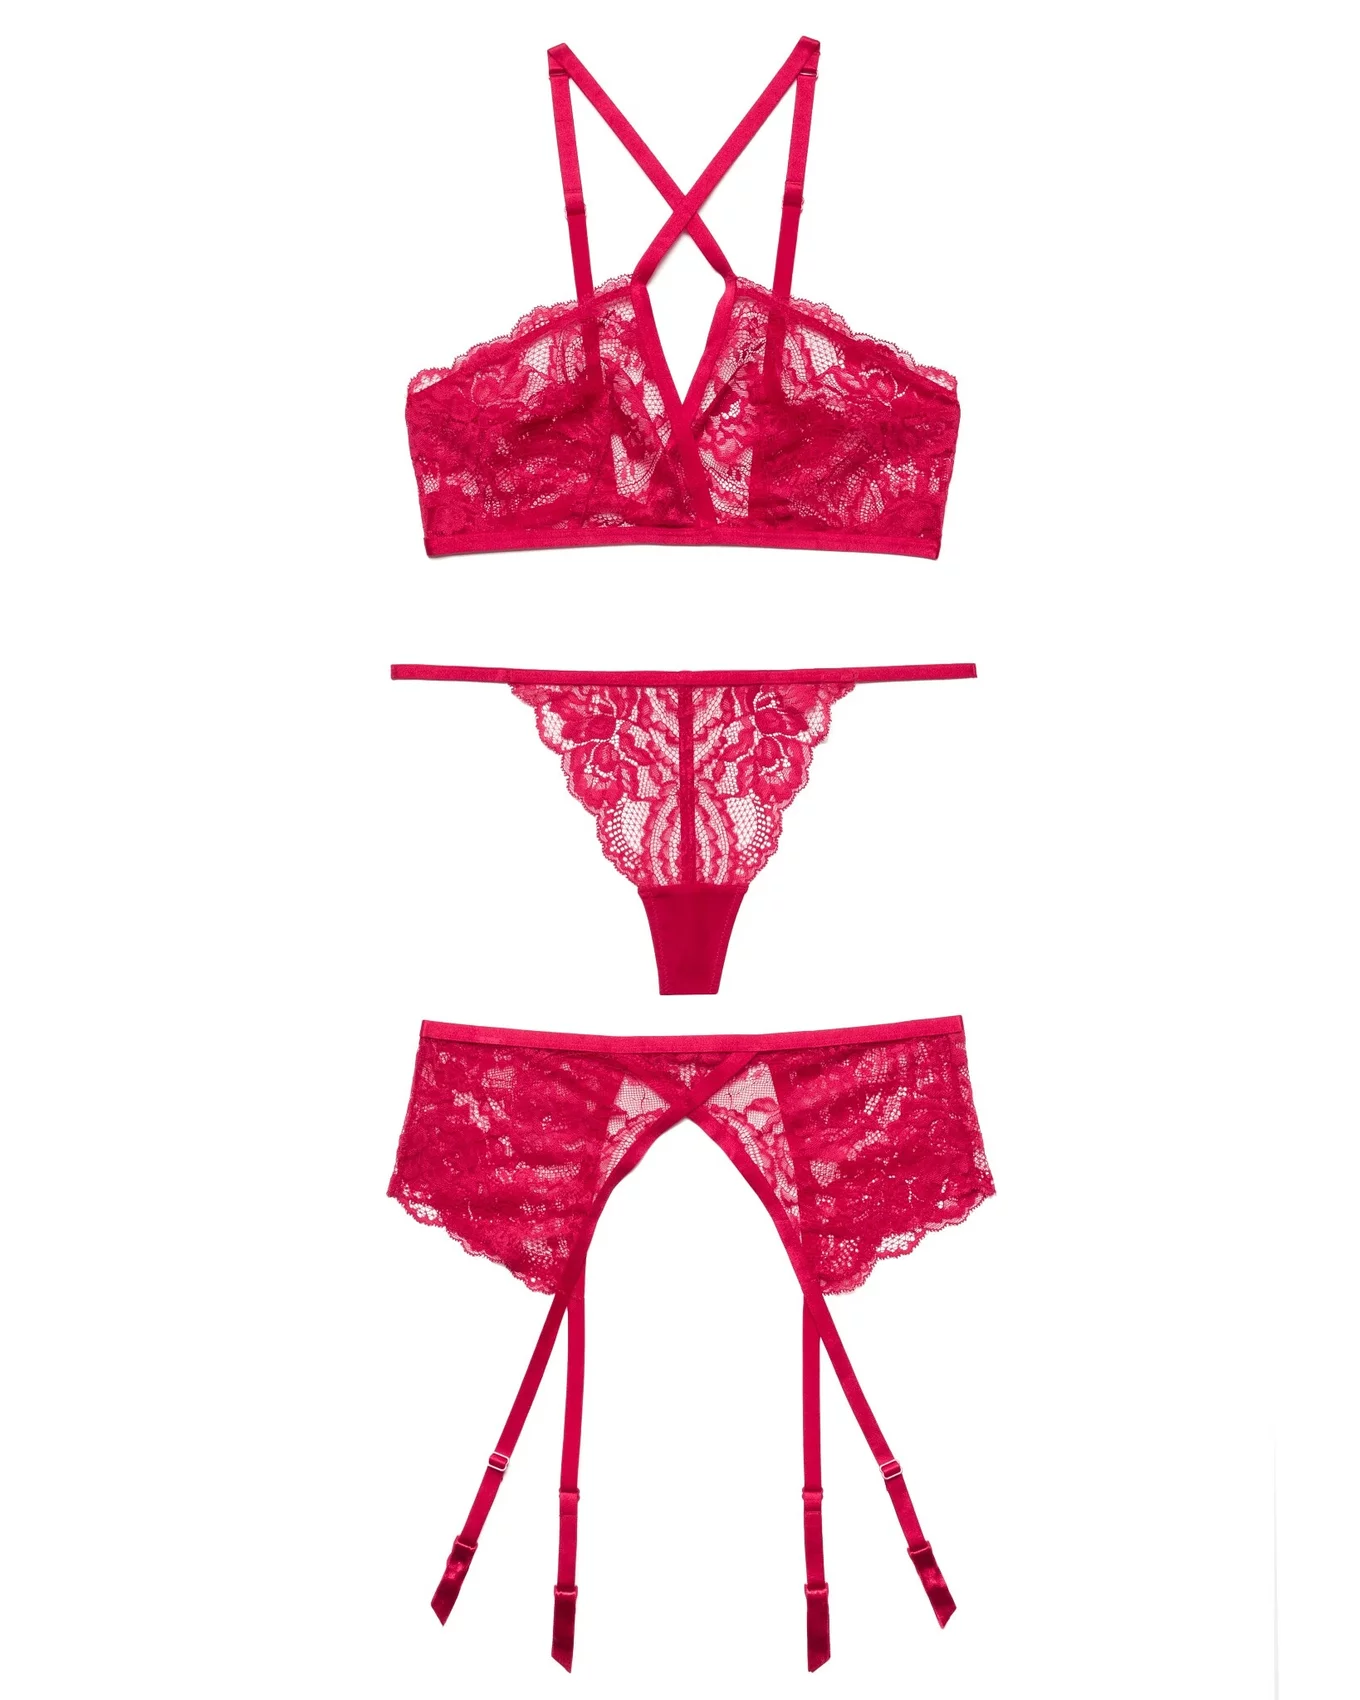 Victoria's Secret Pink Red Lace Lingerie